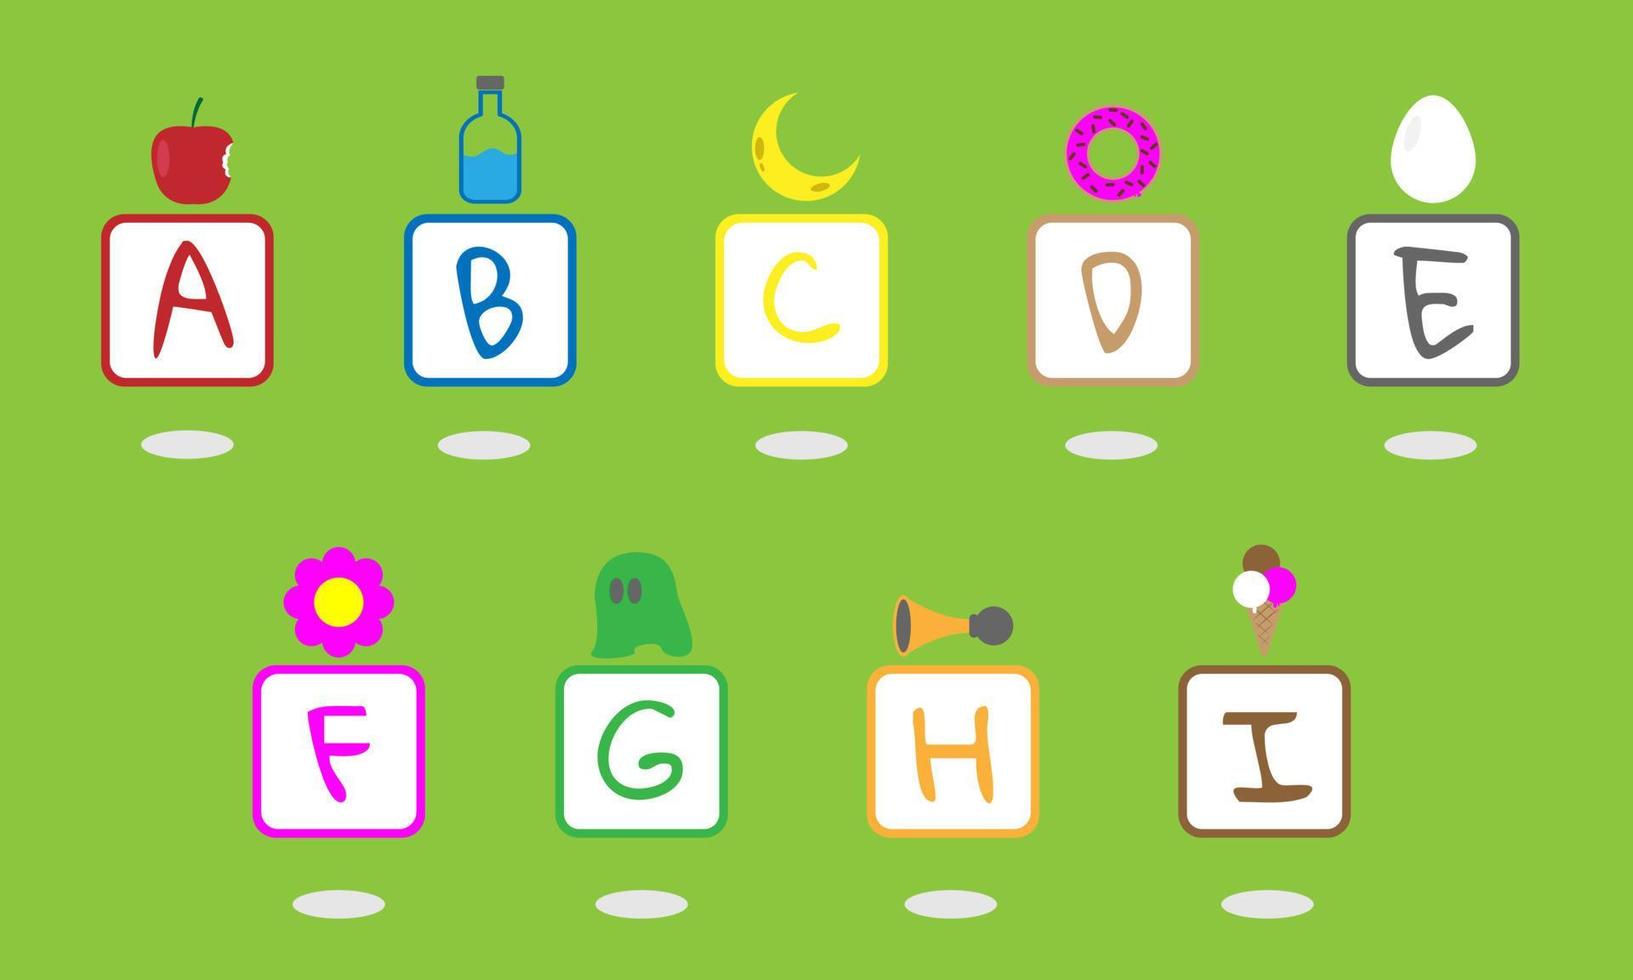 lettere maiuscole da a a i in un quadrato con un esempio di un oggetto sopra il quadrato. adatto per prodotti per bambini vettore